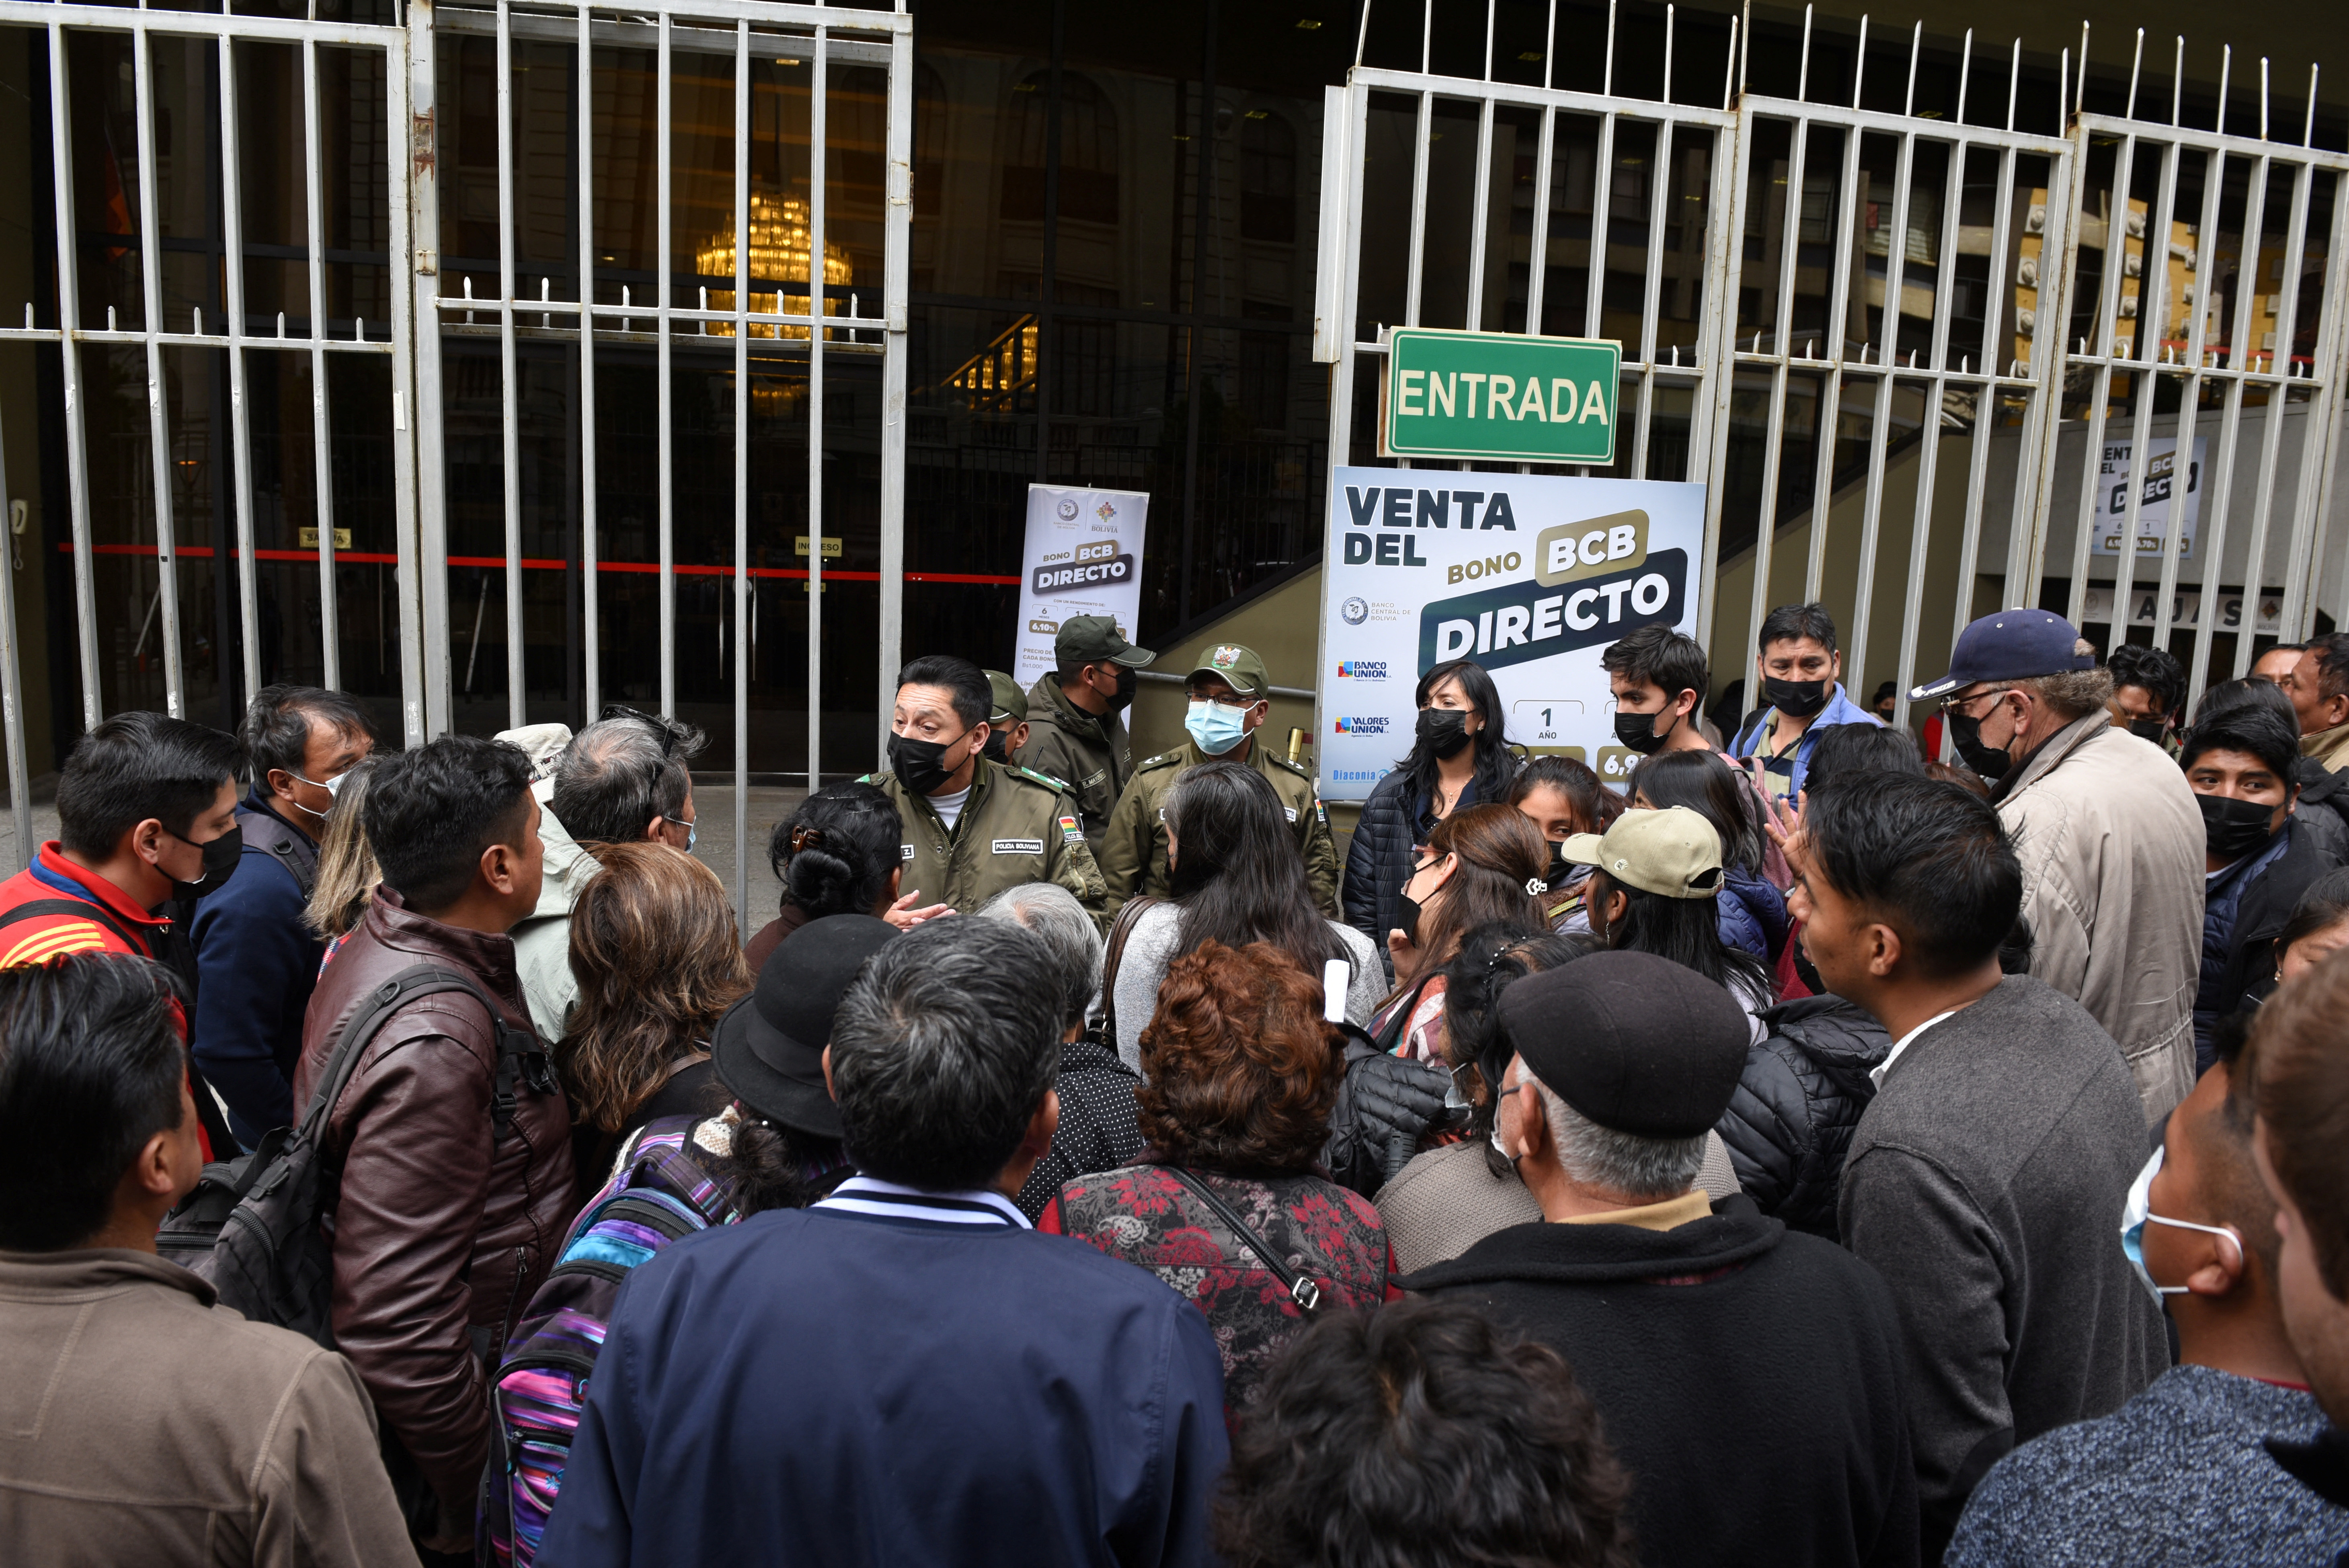 Escasez de dólares en Bolivia: el gobierno de Arce anunció que controlará ventas “sospechosas”